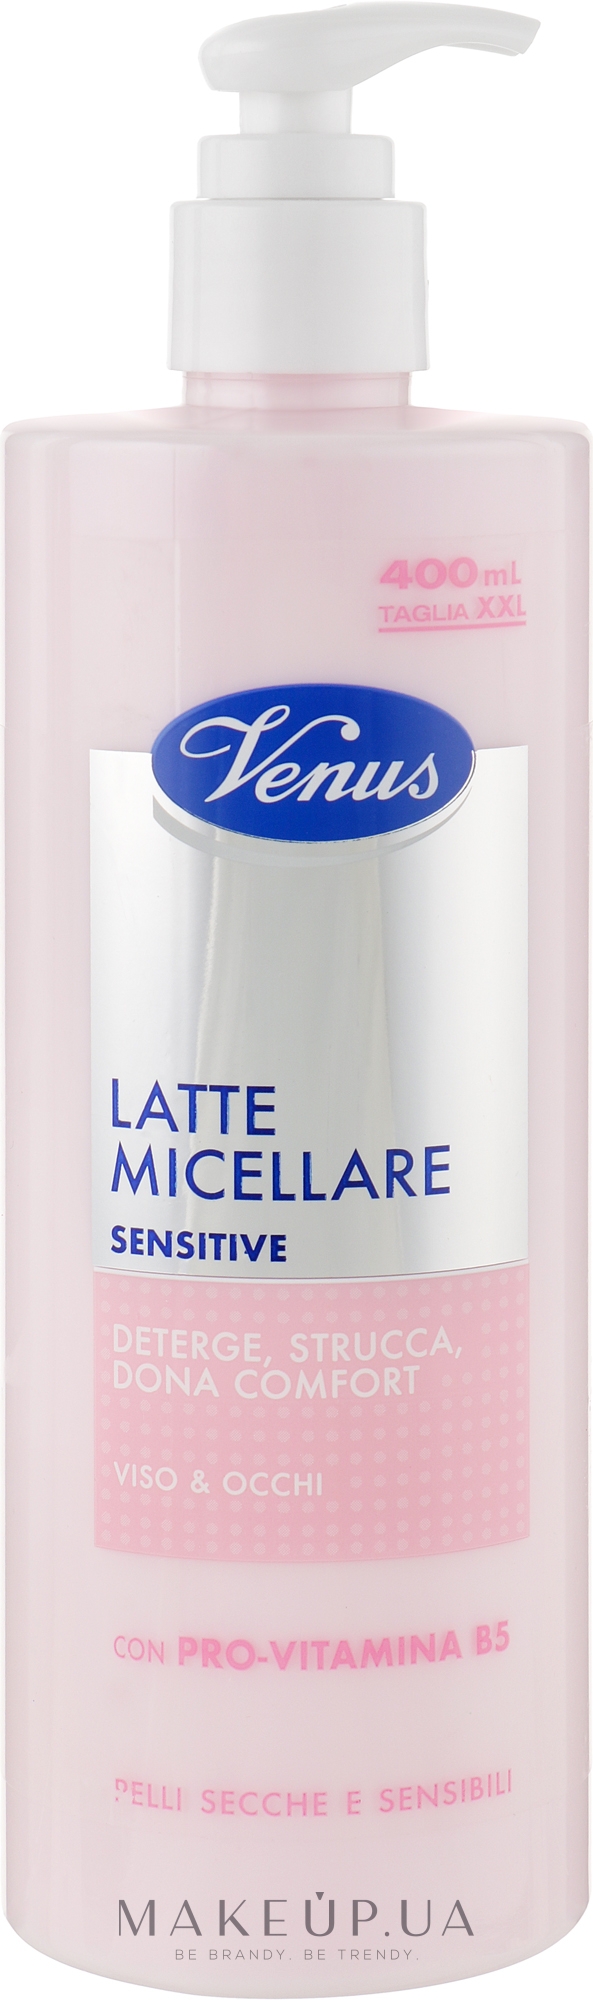 Мицеллярное молочко для чувствительной кожи лица и глаз - Venus Latte Micellare Sensitive — фото 400ml